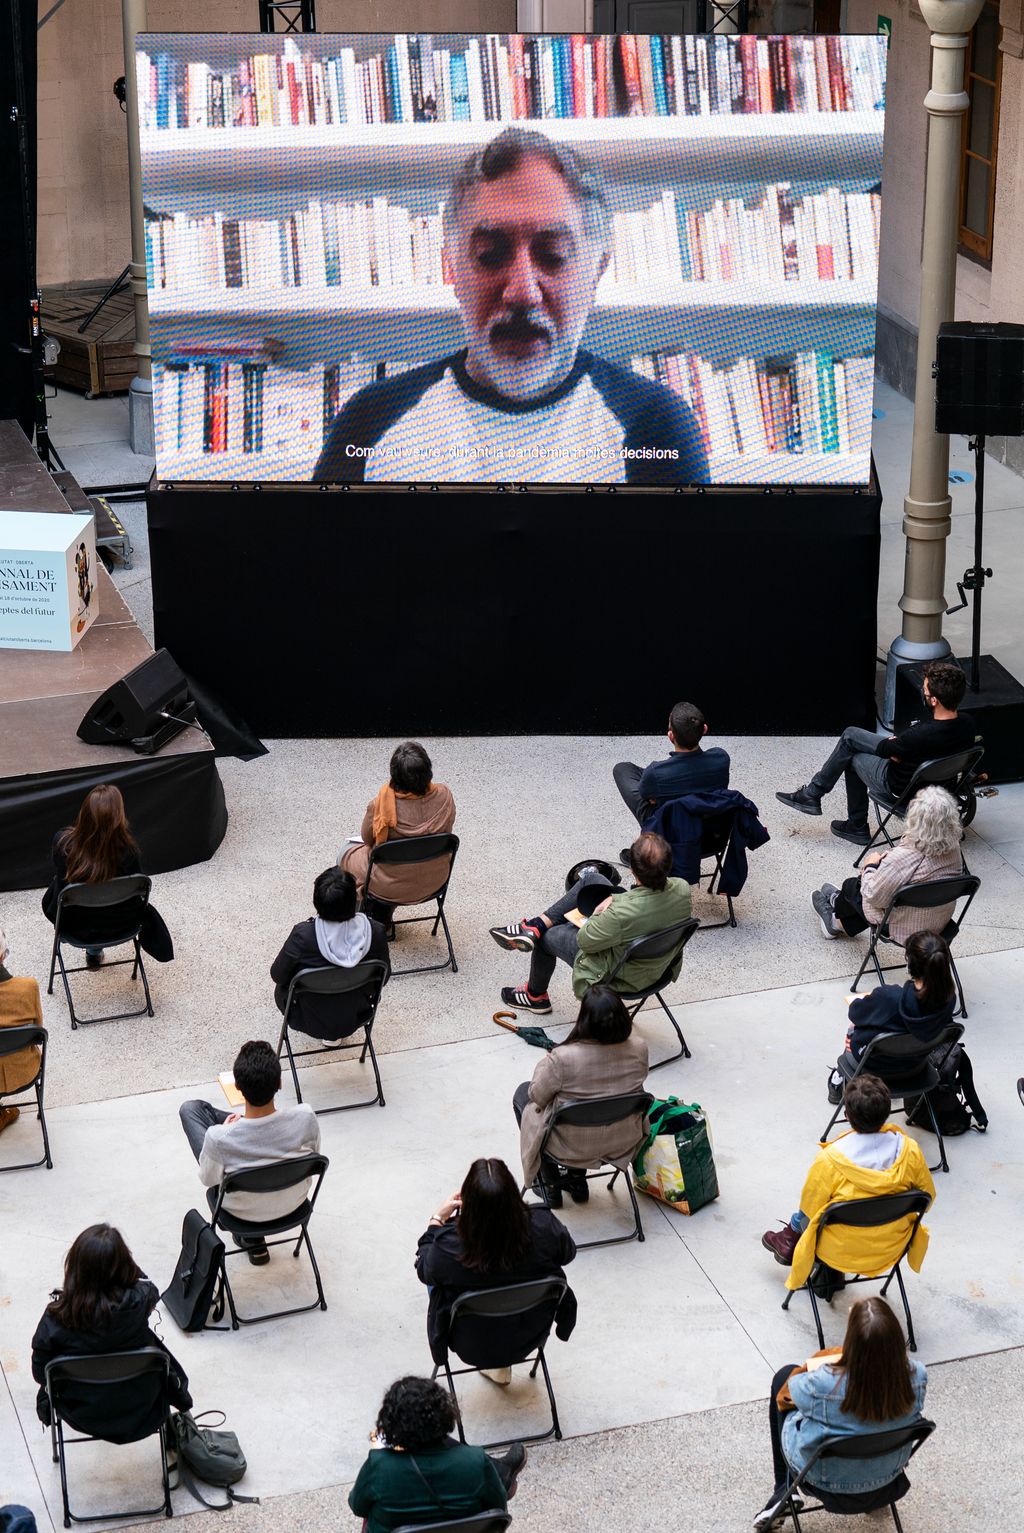 Vista zenital sobre el públic assistent a la taula rodona "La ciutat del futur" a la Model i de la pantalla on apareix un dels convidats, l'arquitecte Hashim Sarkis